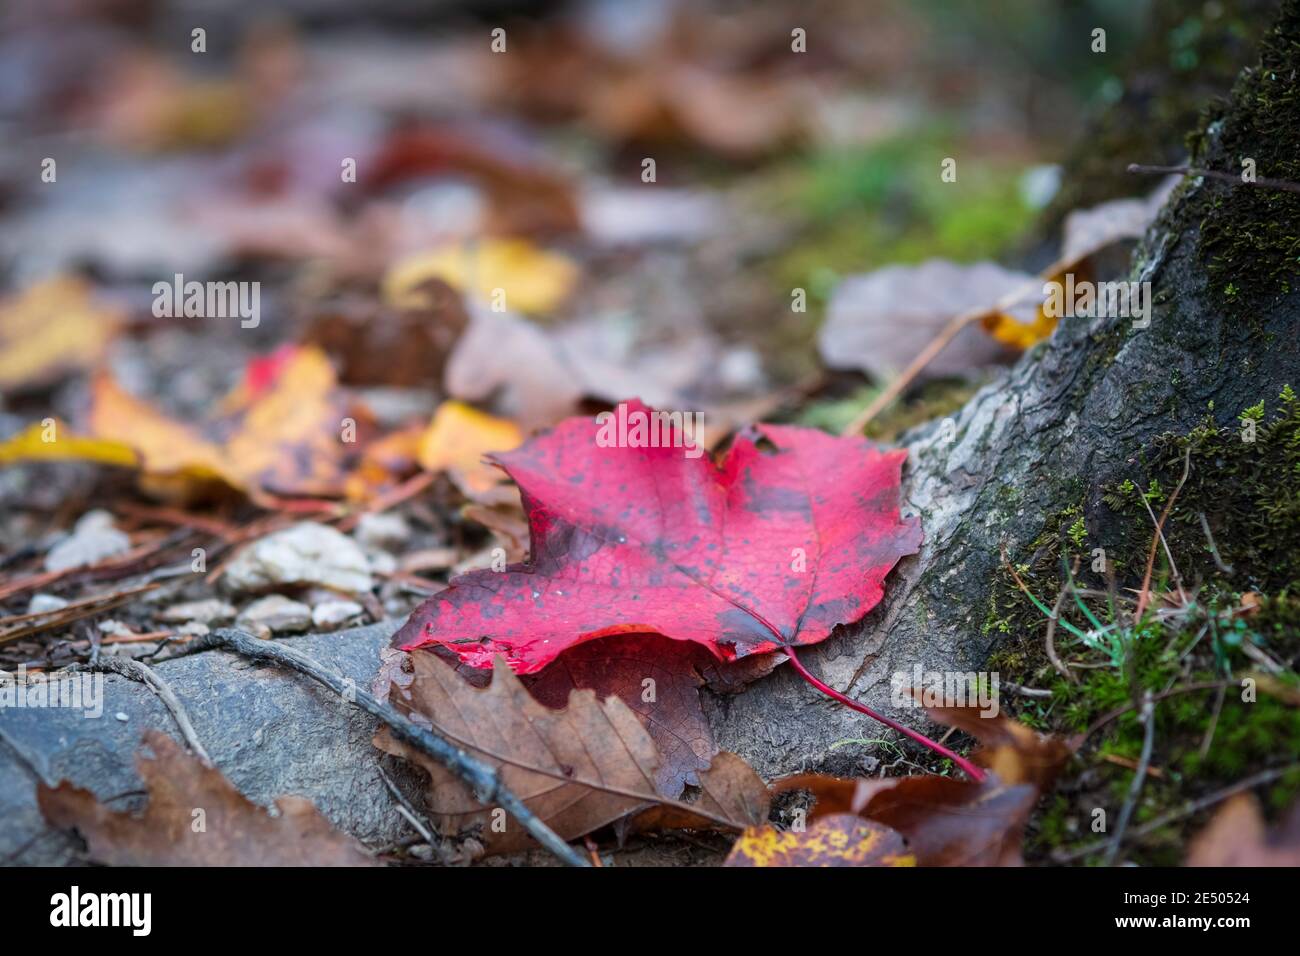 Arrière-plan naturel d'une feuille d'érable rouge (acer rubrum) située sur une racine d'arbre au fond de la forêt - prise avec un foyer peu profond. Banque D'Images